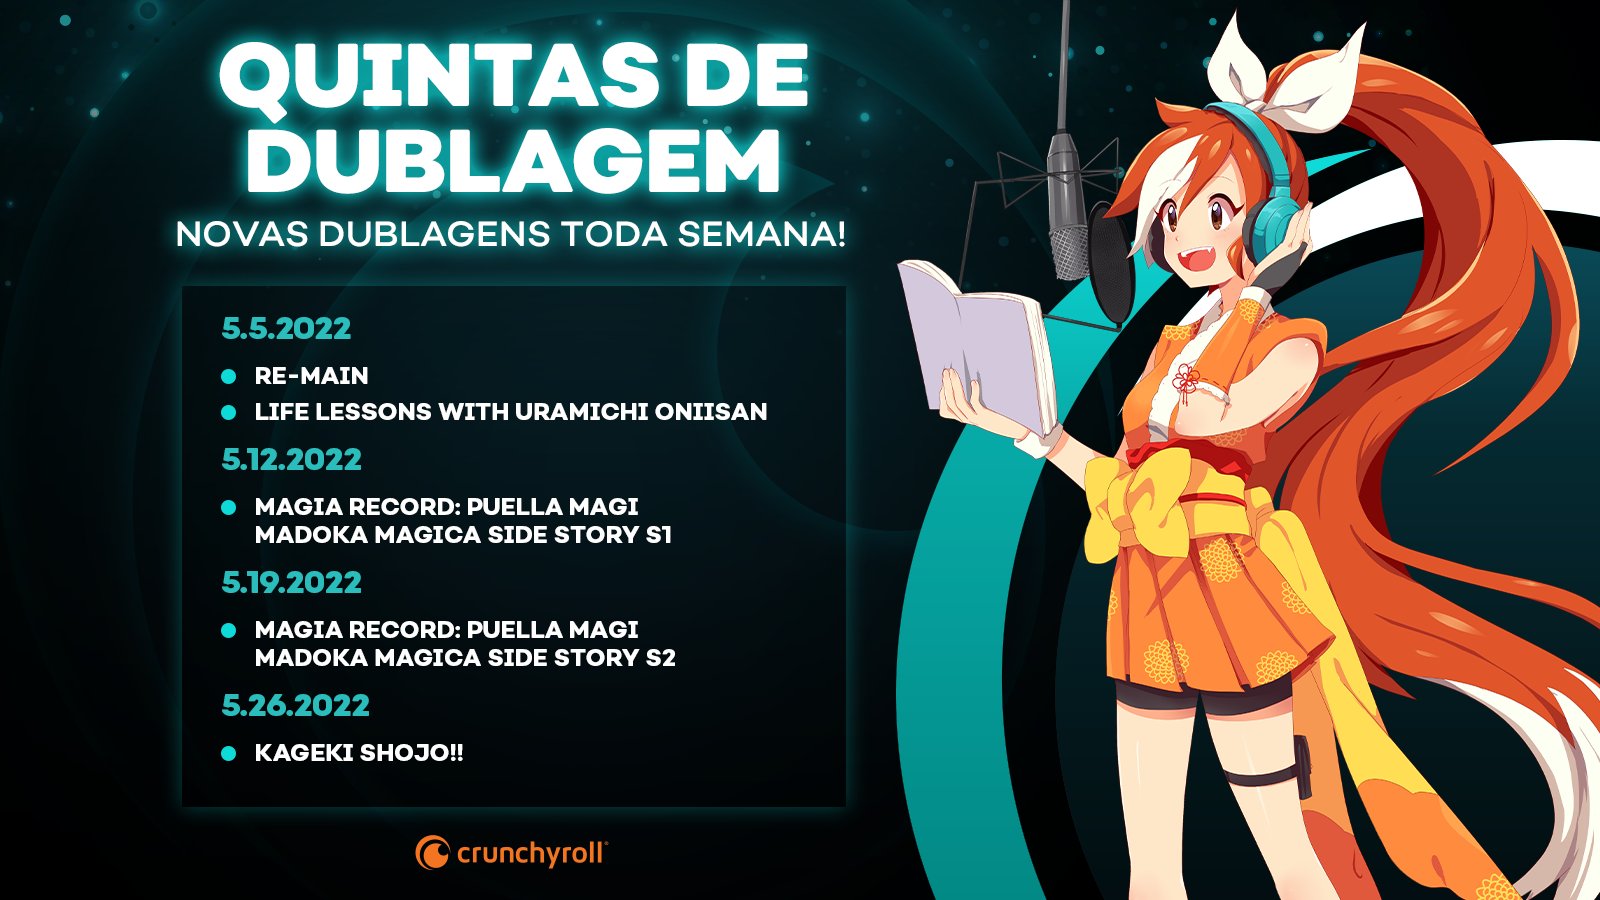 Crunchyroll Brasil ✨ on X: 🦇 BOM DIA 🦇 A dublagem do 1º episódio de  Noblesse chega HOJE aqui na Crunchyroll ~  / X